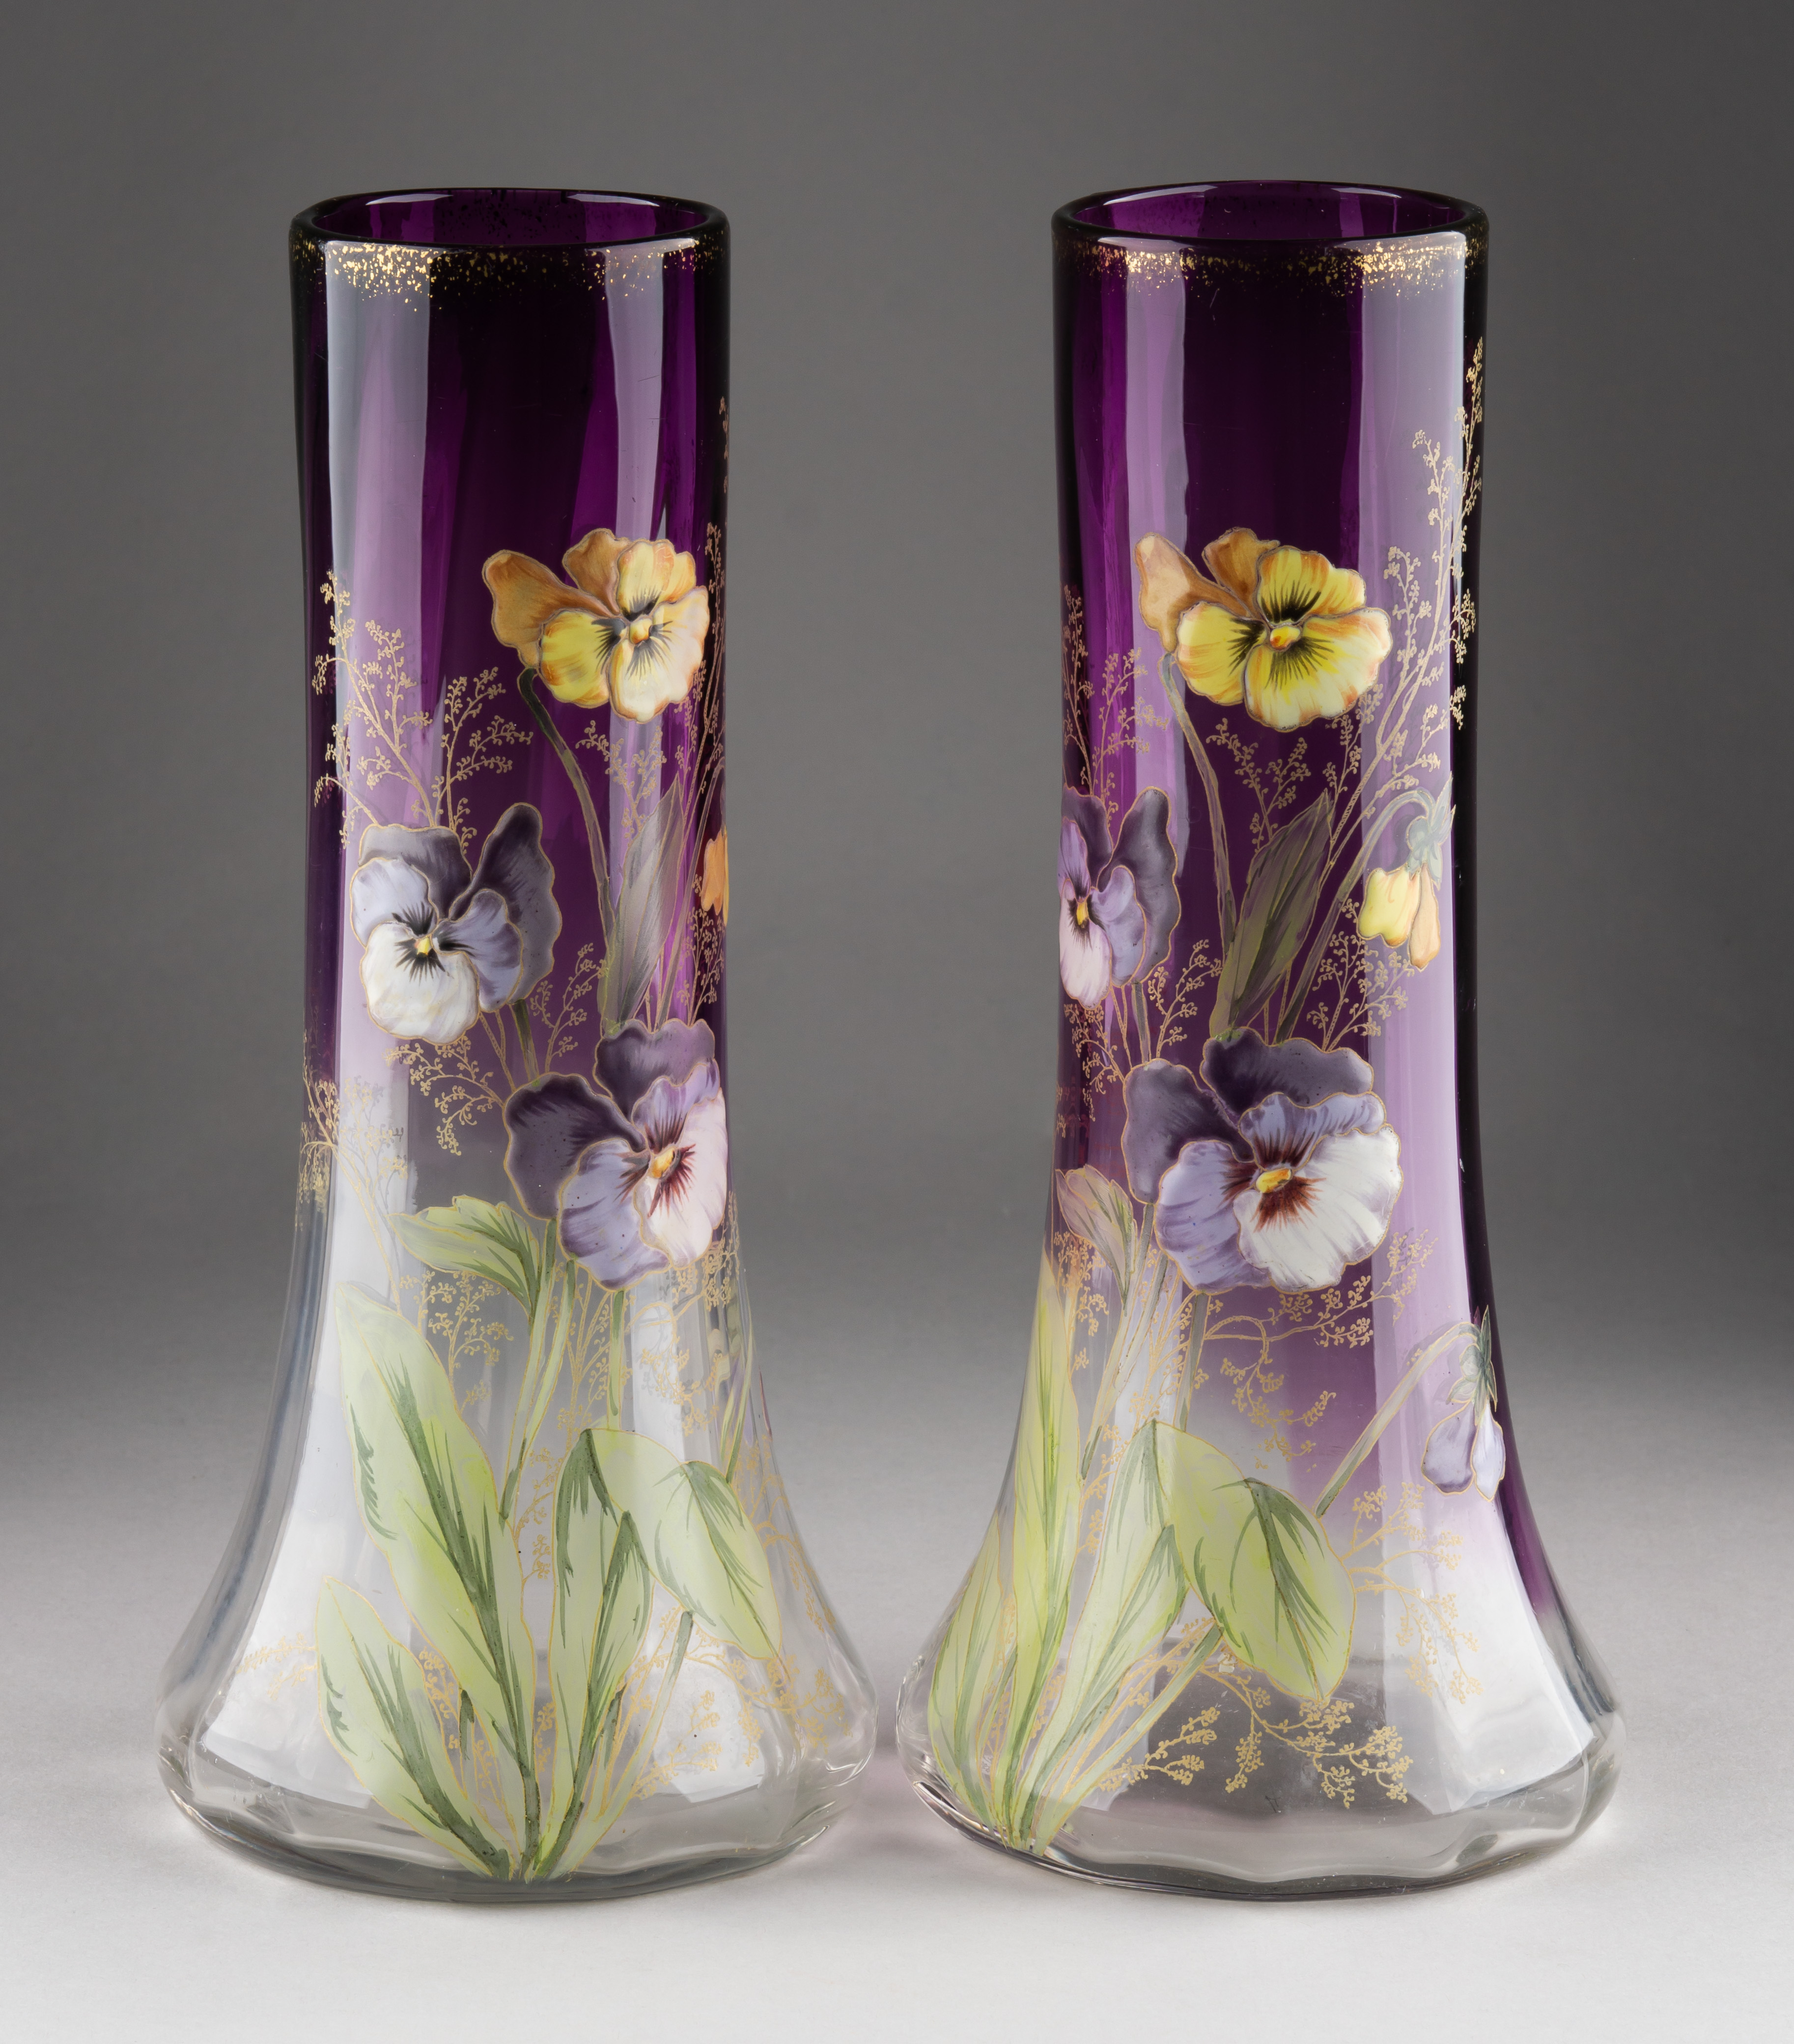 (Legras) Парные вазы «Анютины глазки». <br>Франция, фирма Legras, около 1900 г.